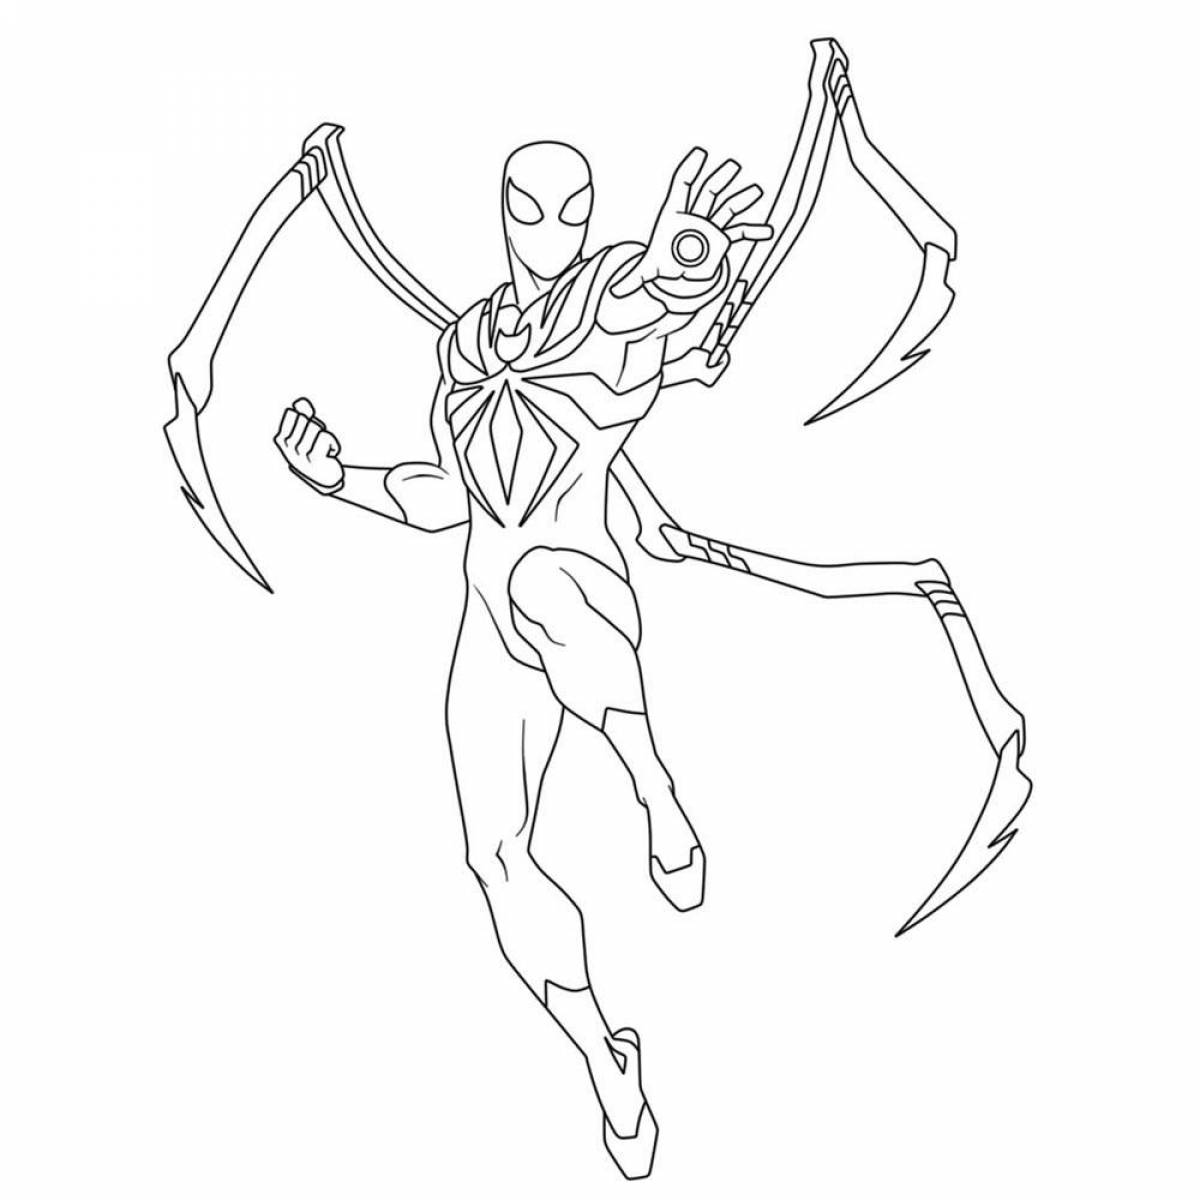 Iron spiderman #3